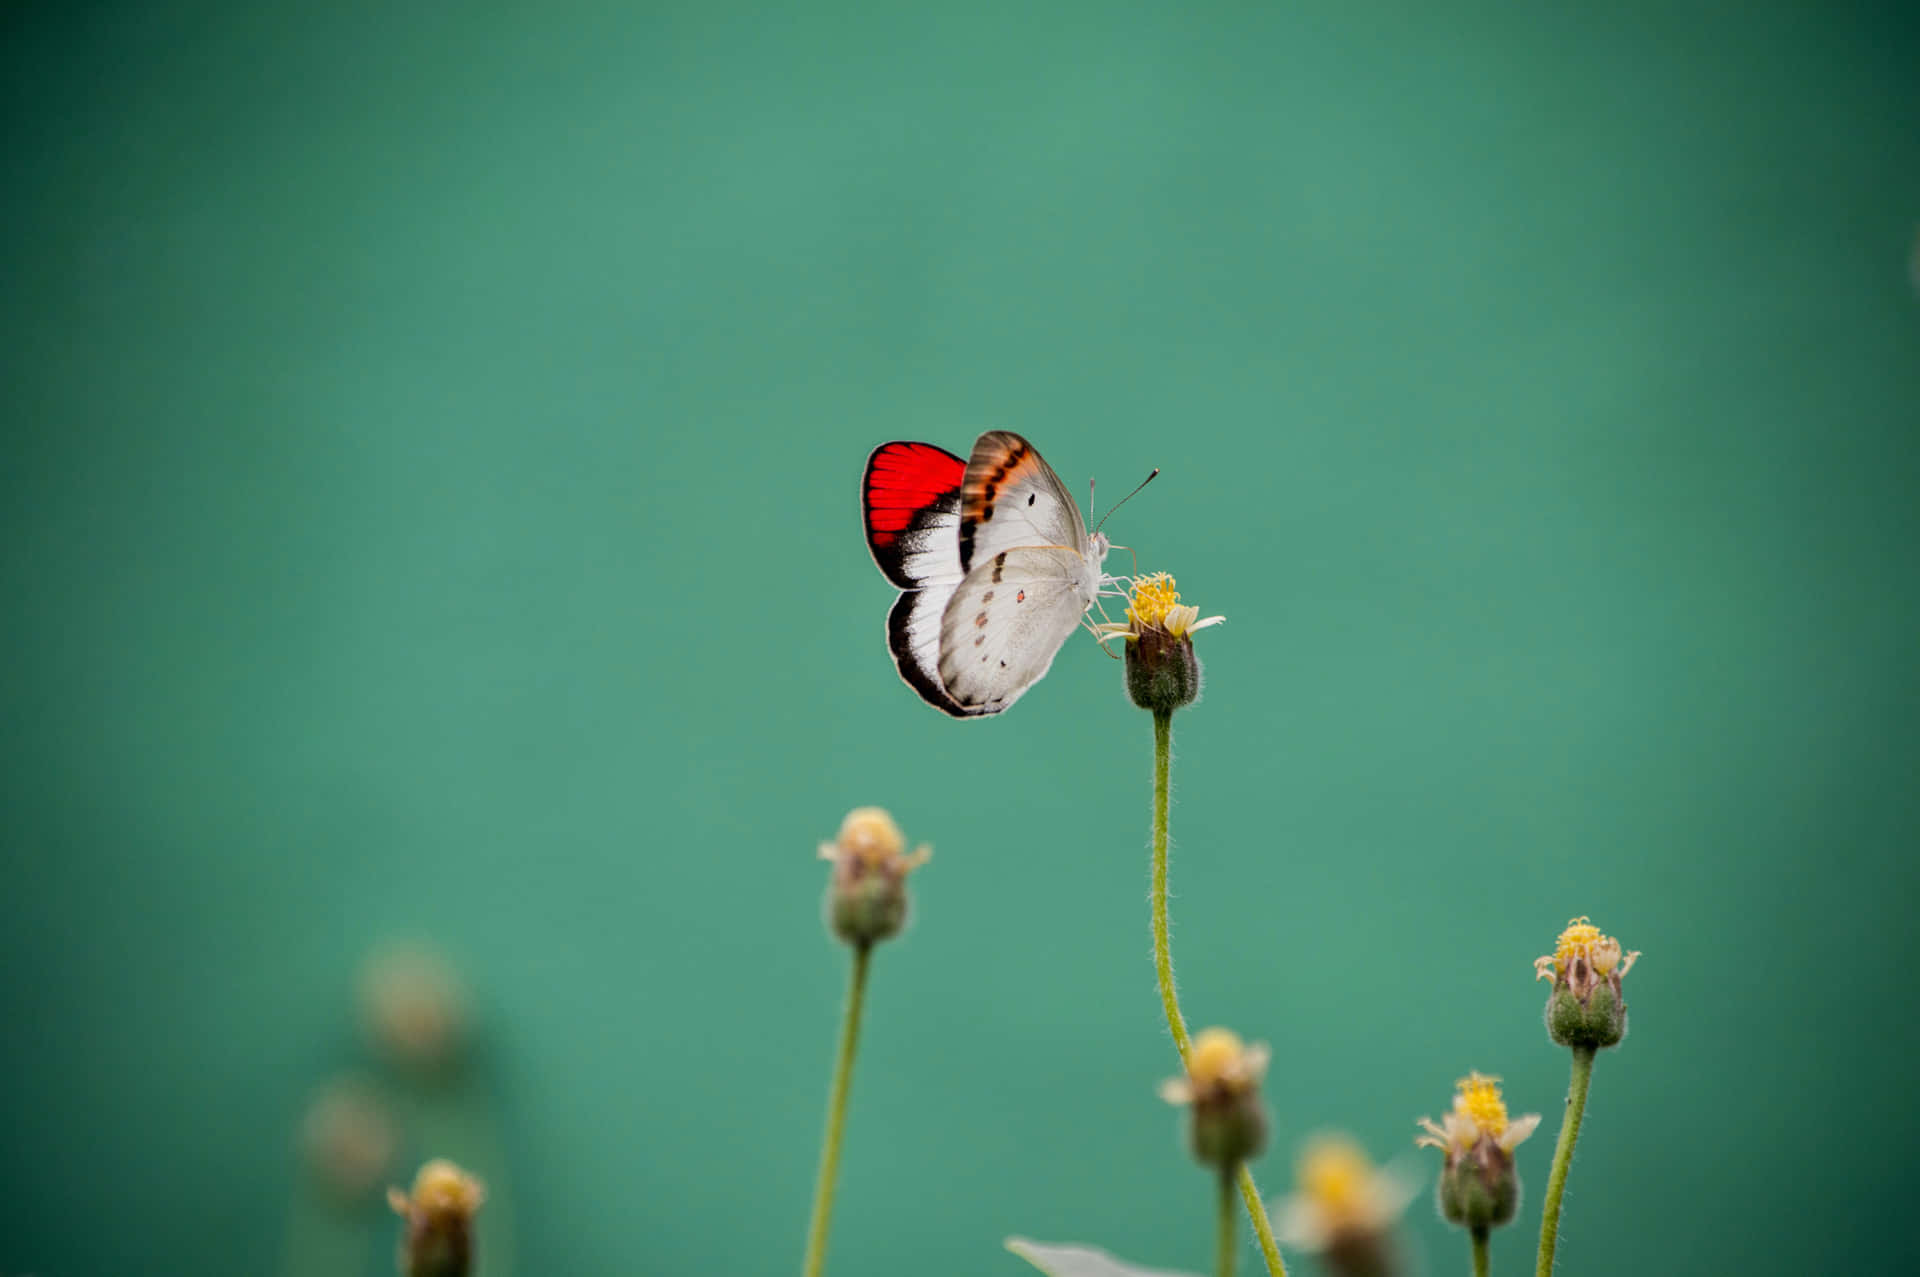 Einschöner Schmetterling In Einem Meer Lebendiger Farben.